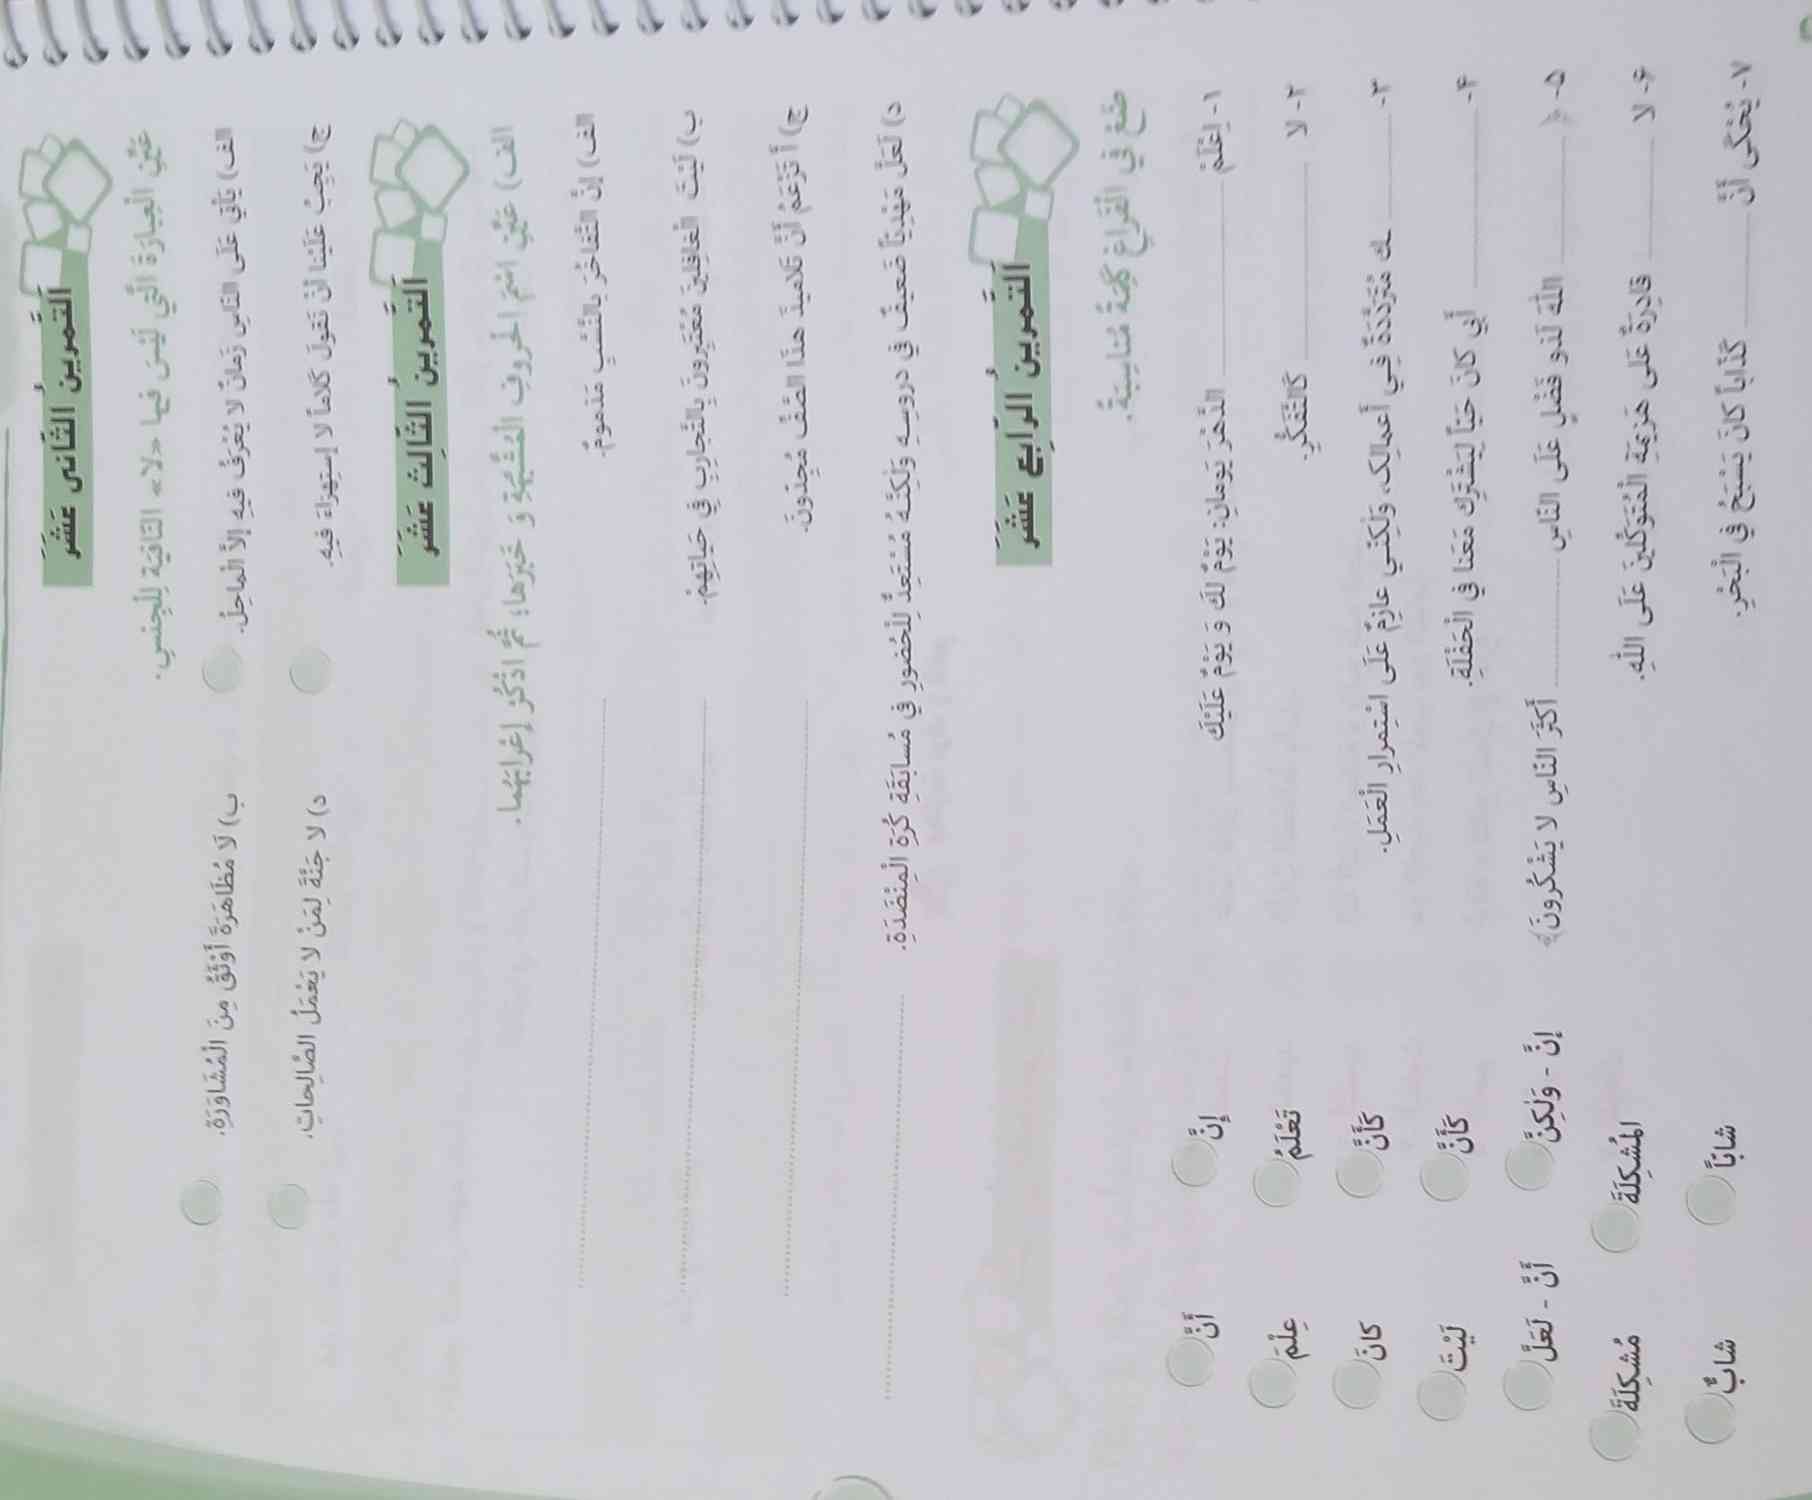 جواب عربی خارج از کتاب فعالیت هست کسی میتونه کمکم کنه لطفا!